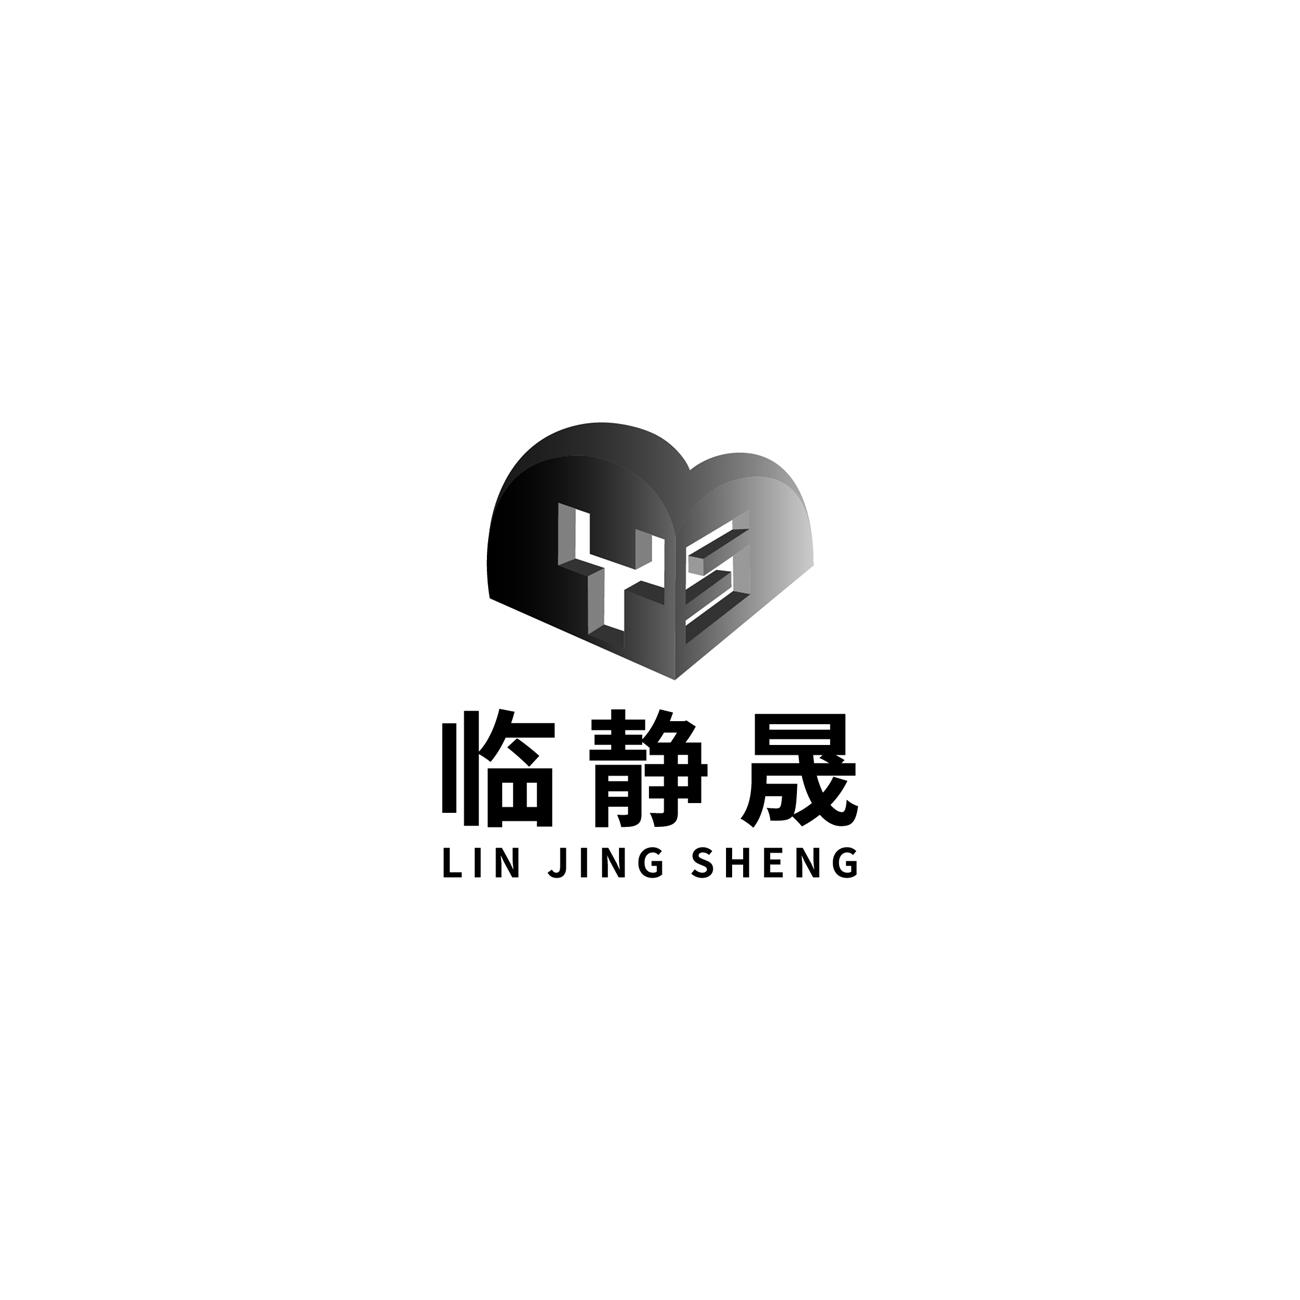 临静晟logo